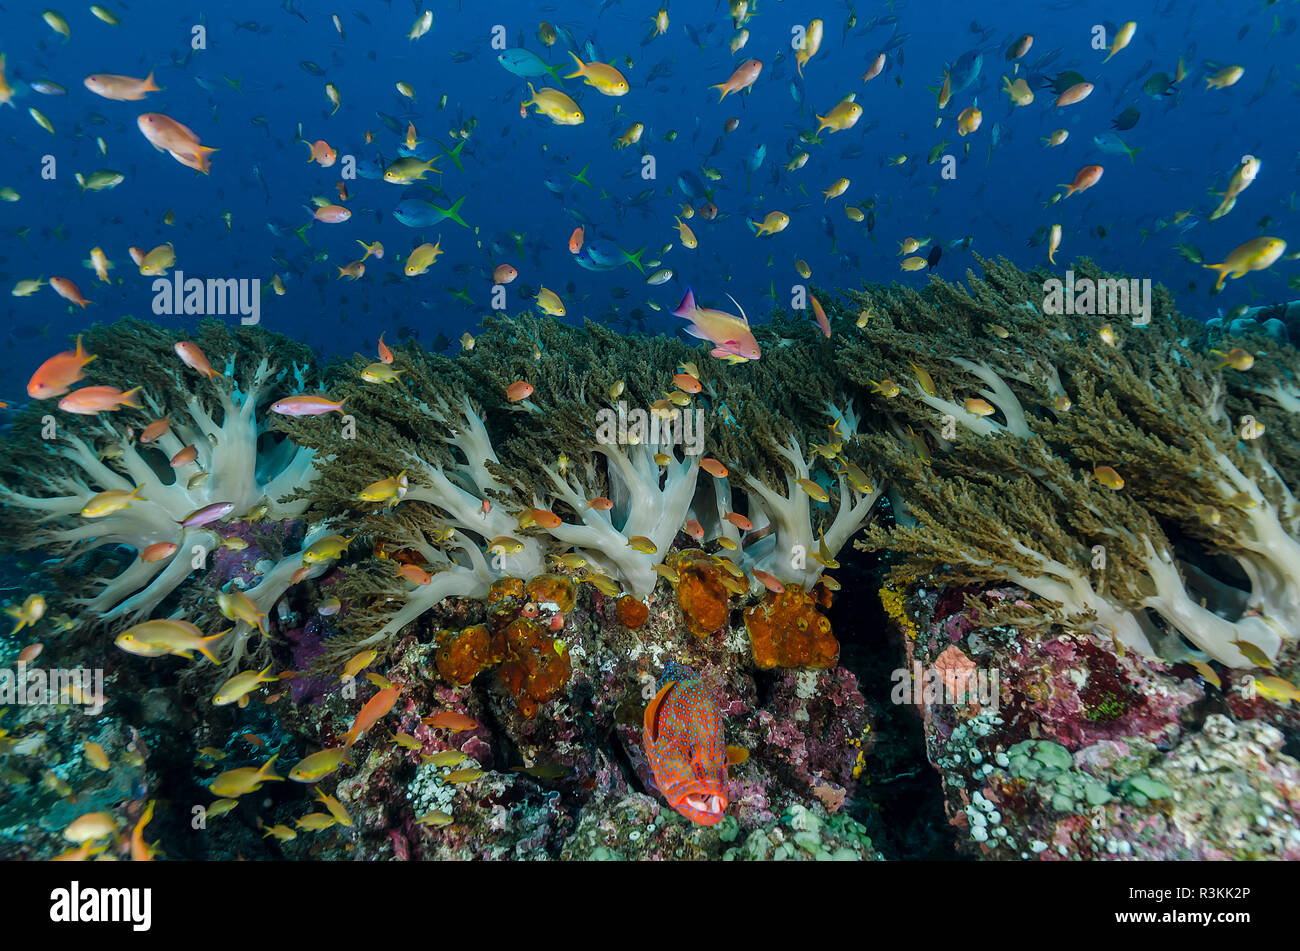 L'Indonésie, la Papouasie occidentale, Raja Ampat. Les coraux et les poissons. En tant que crédit : Jones et Shimlock / Jaynes Gallery / DanitaDelimont.com Banque D'Images